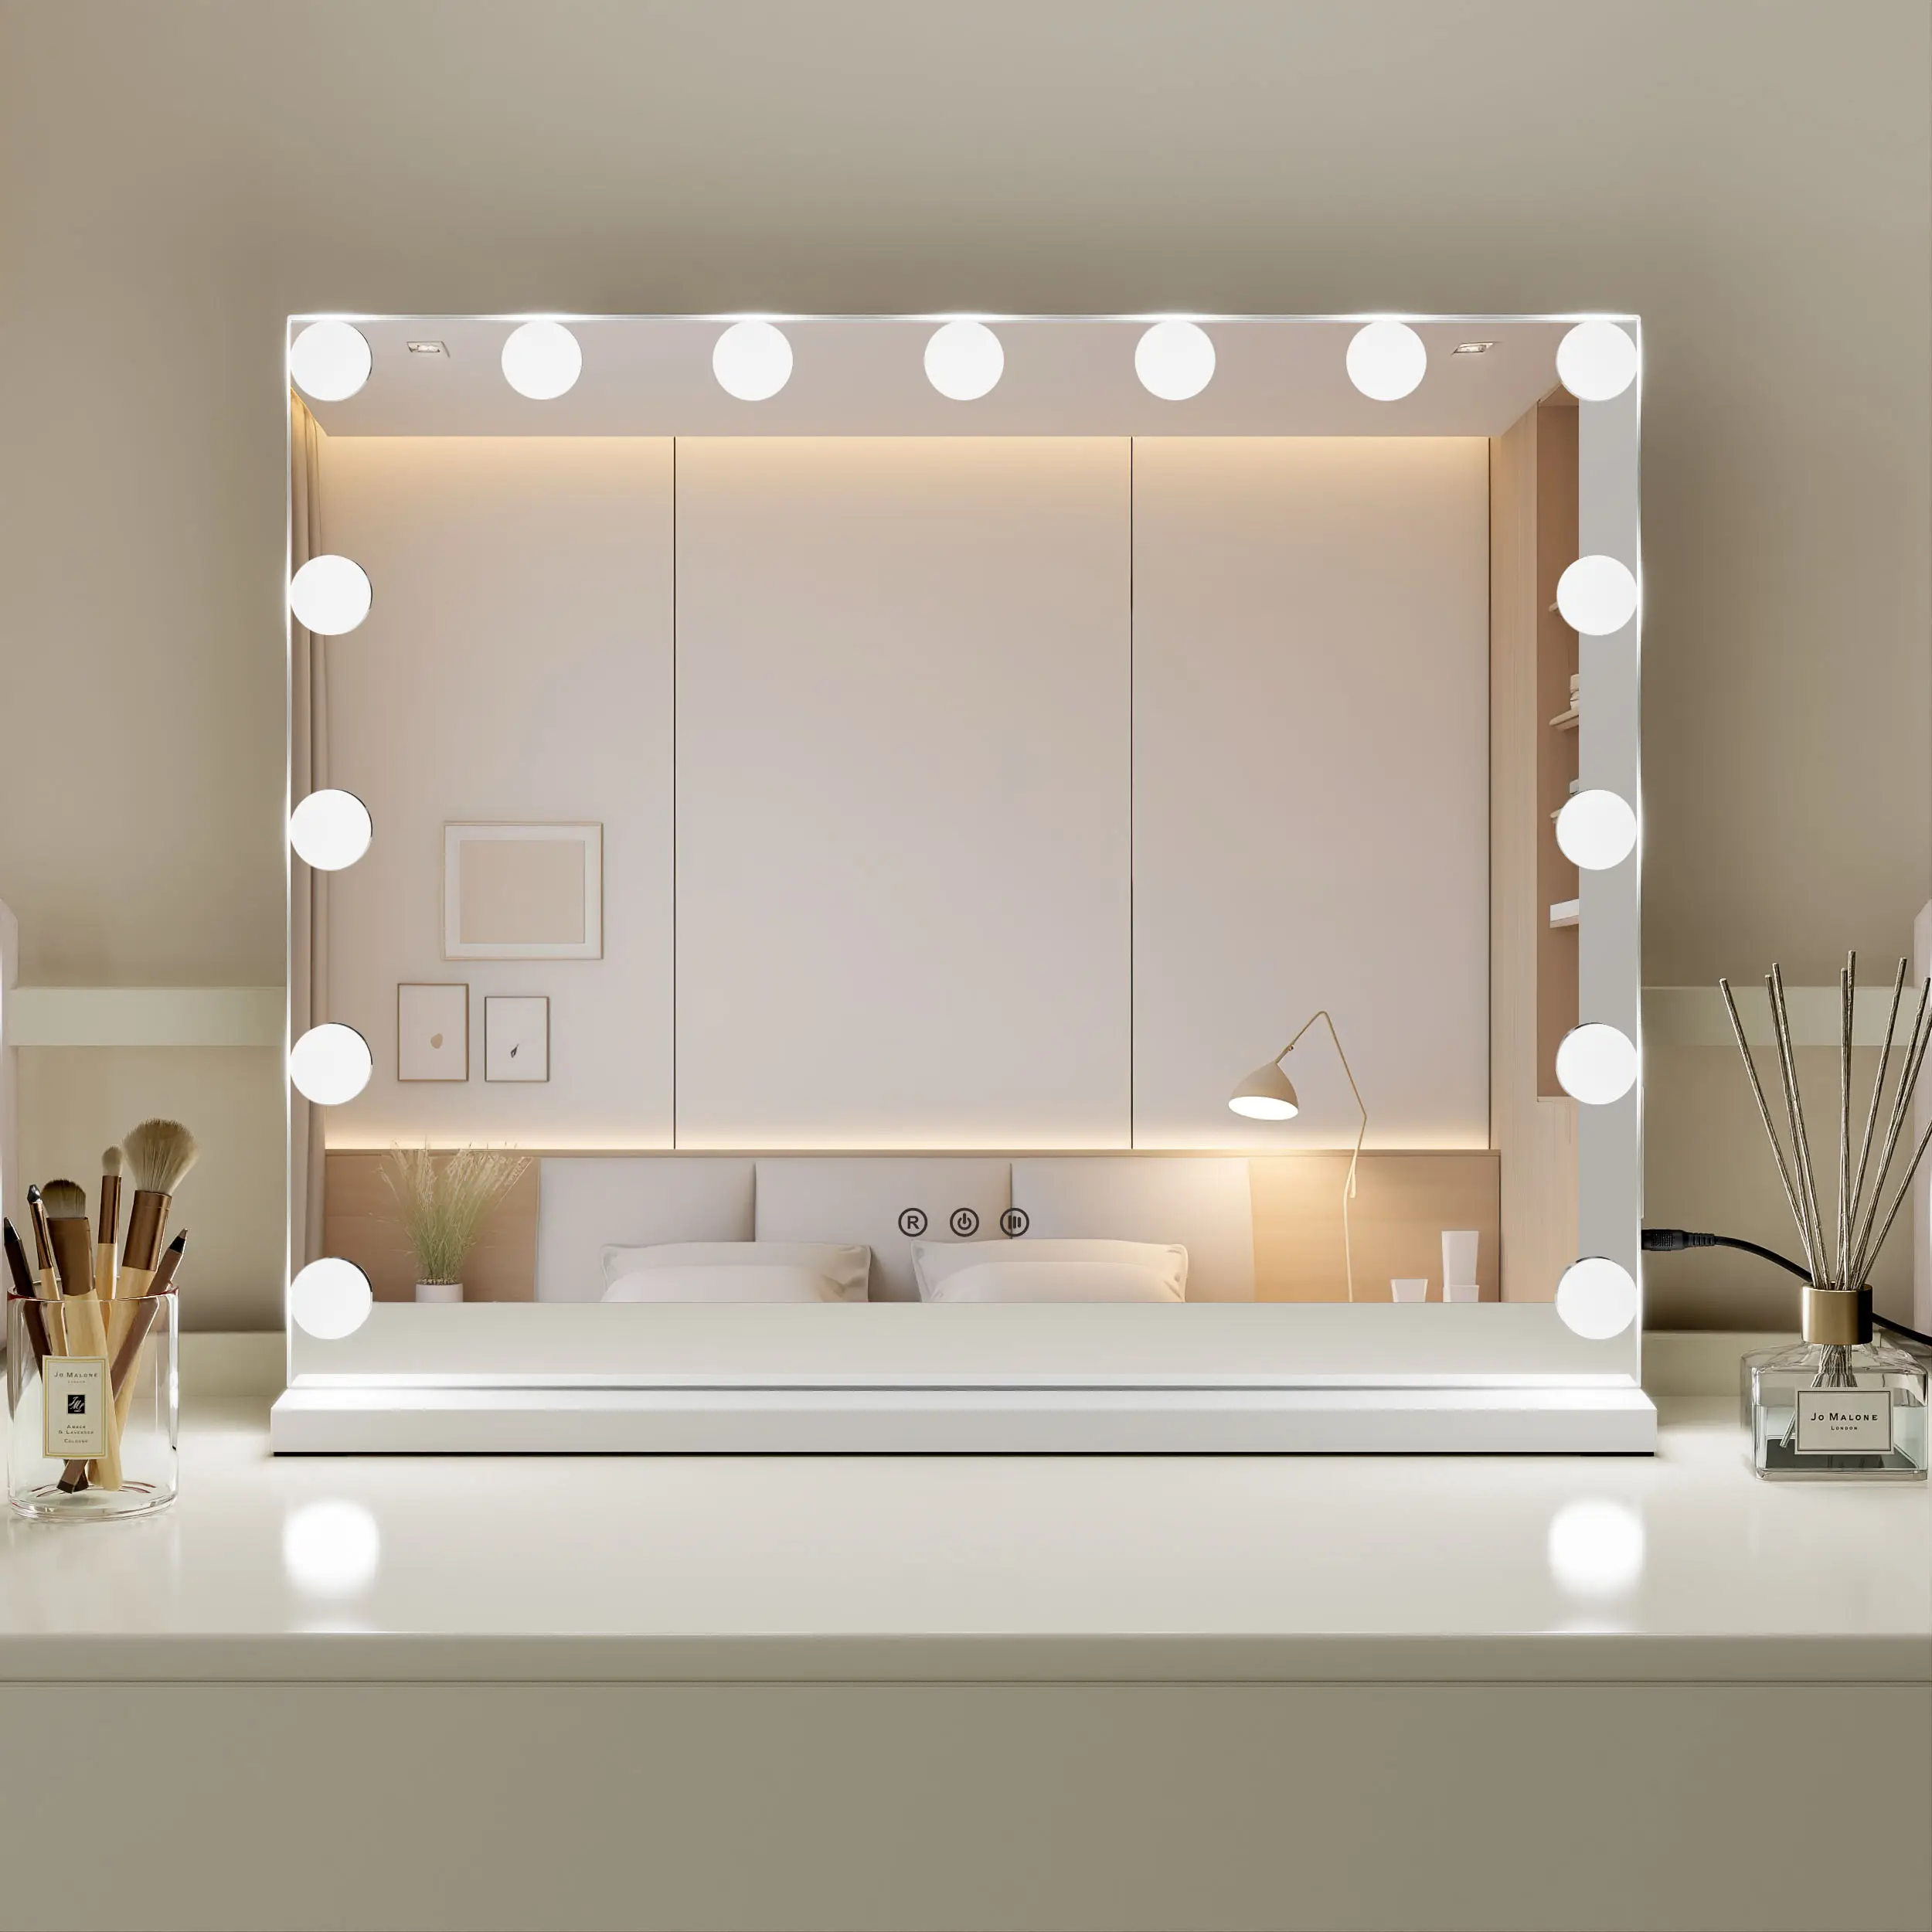 3 Cores Modos Usb Carregamento Porta Touch Screen Maquiagem Espelho Com Luzes Led Iluminado Vanity Hollywood Mirror